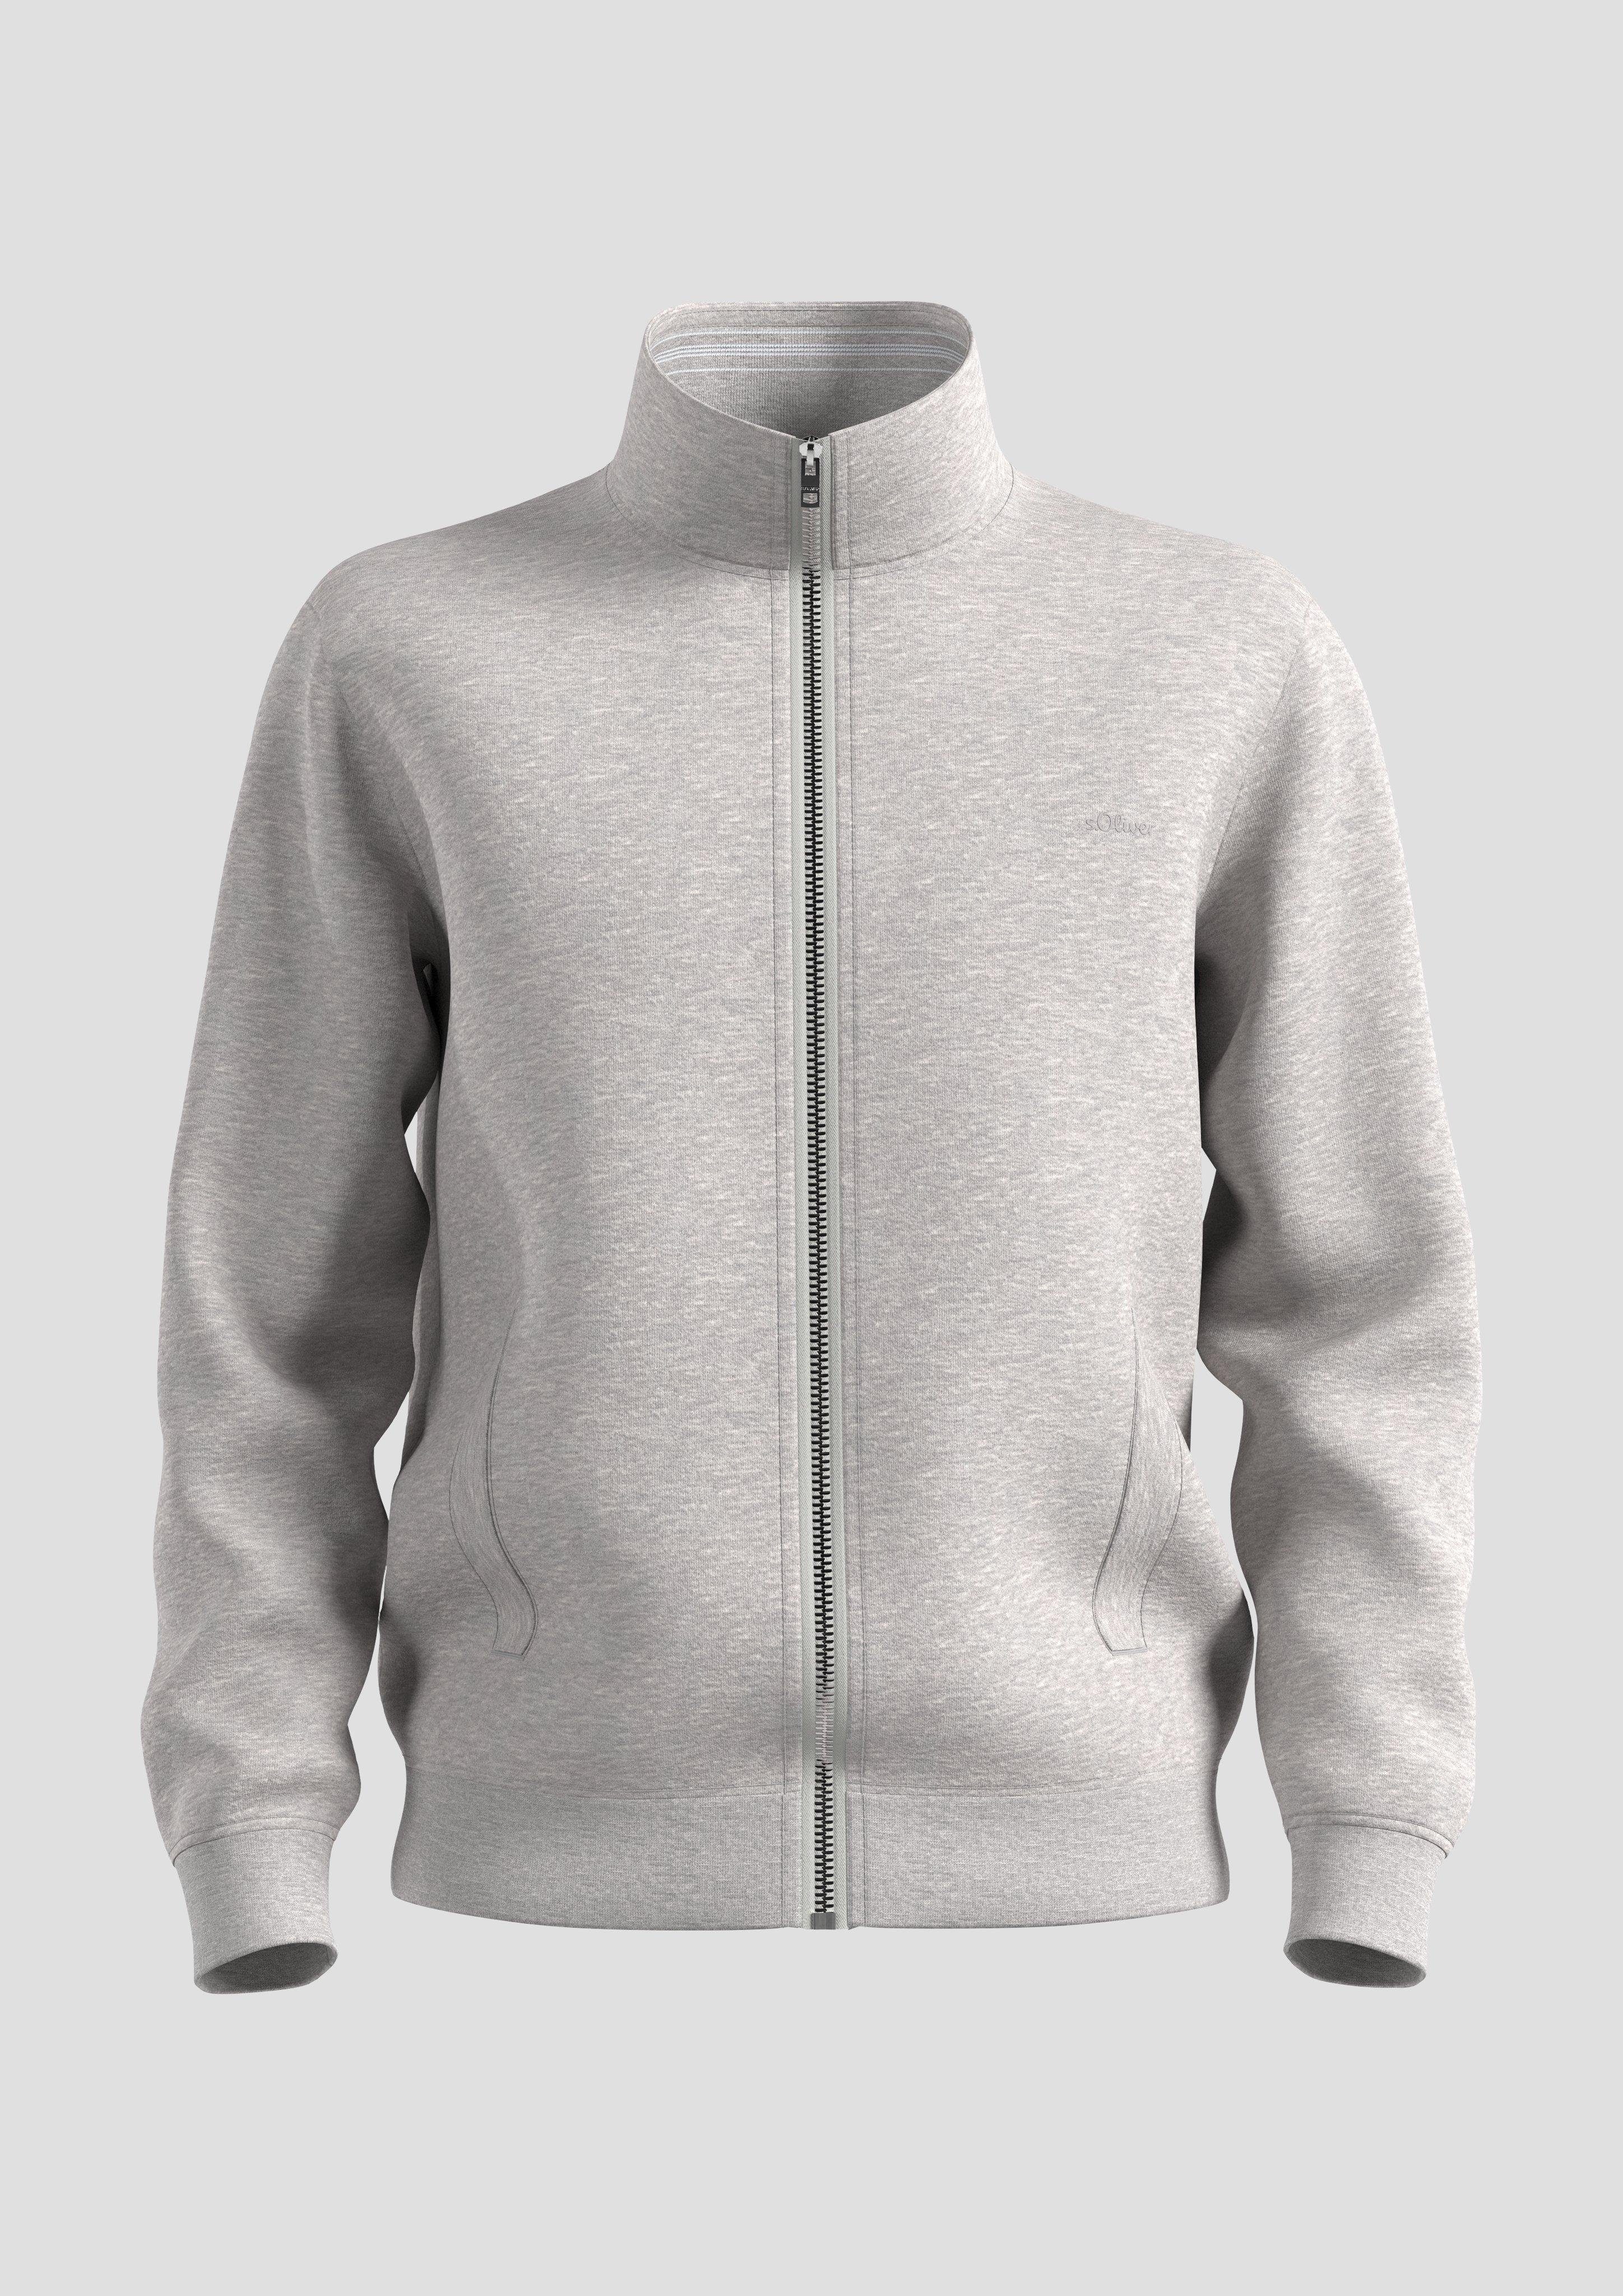 s.Oliver Allwetterjacke Sweatshirt-Jacke mit Streifen-Detail Stehkragen Logo, grau meliert